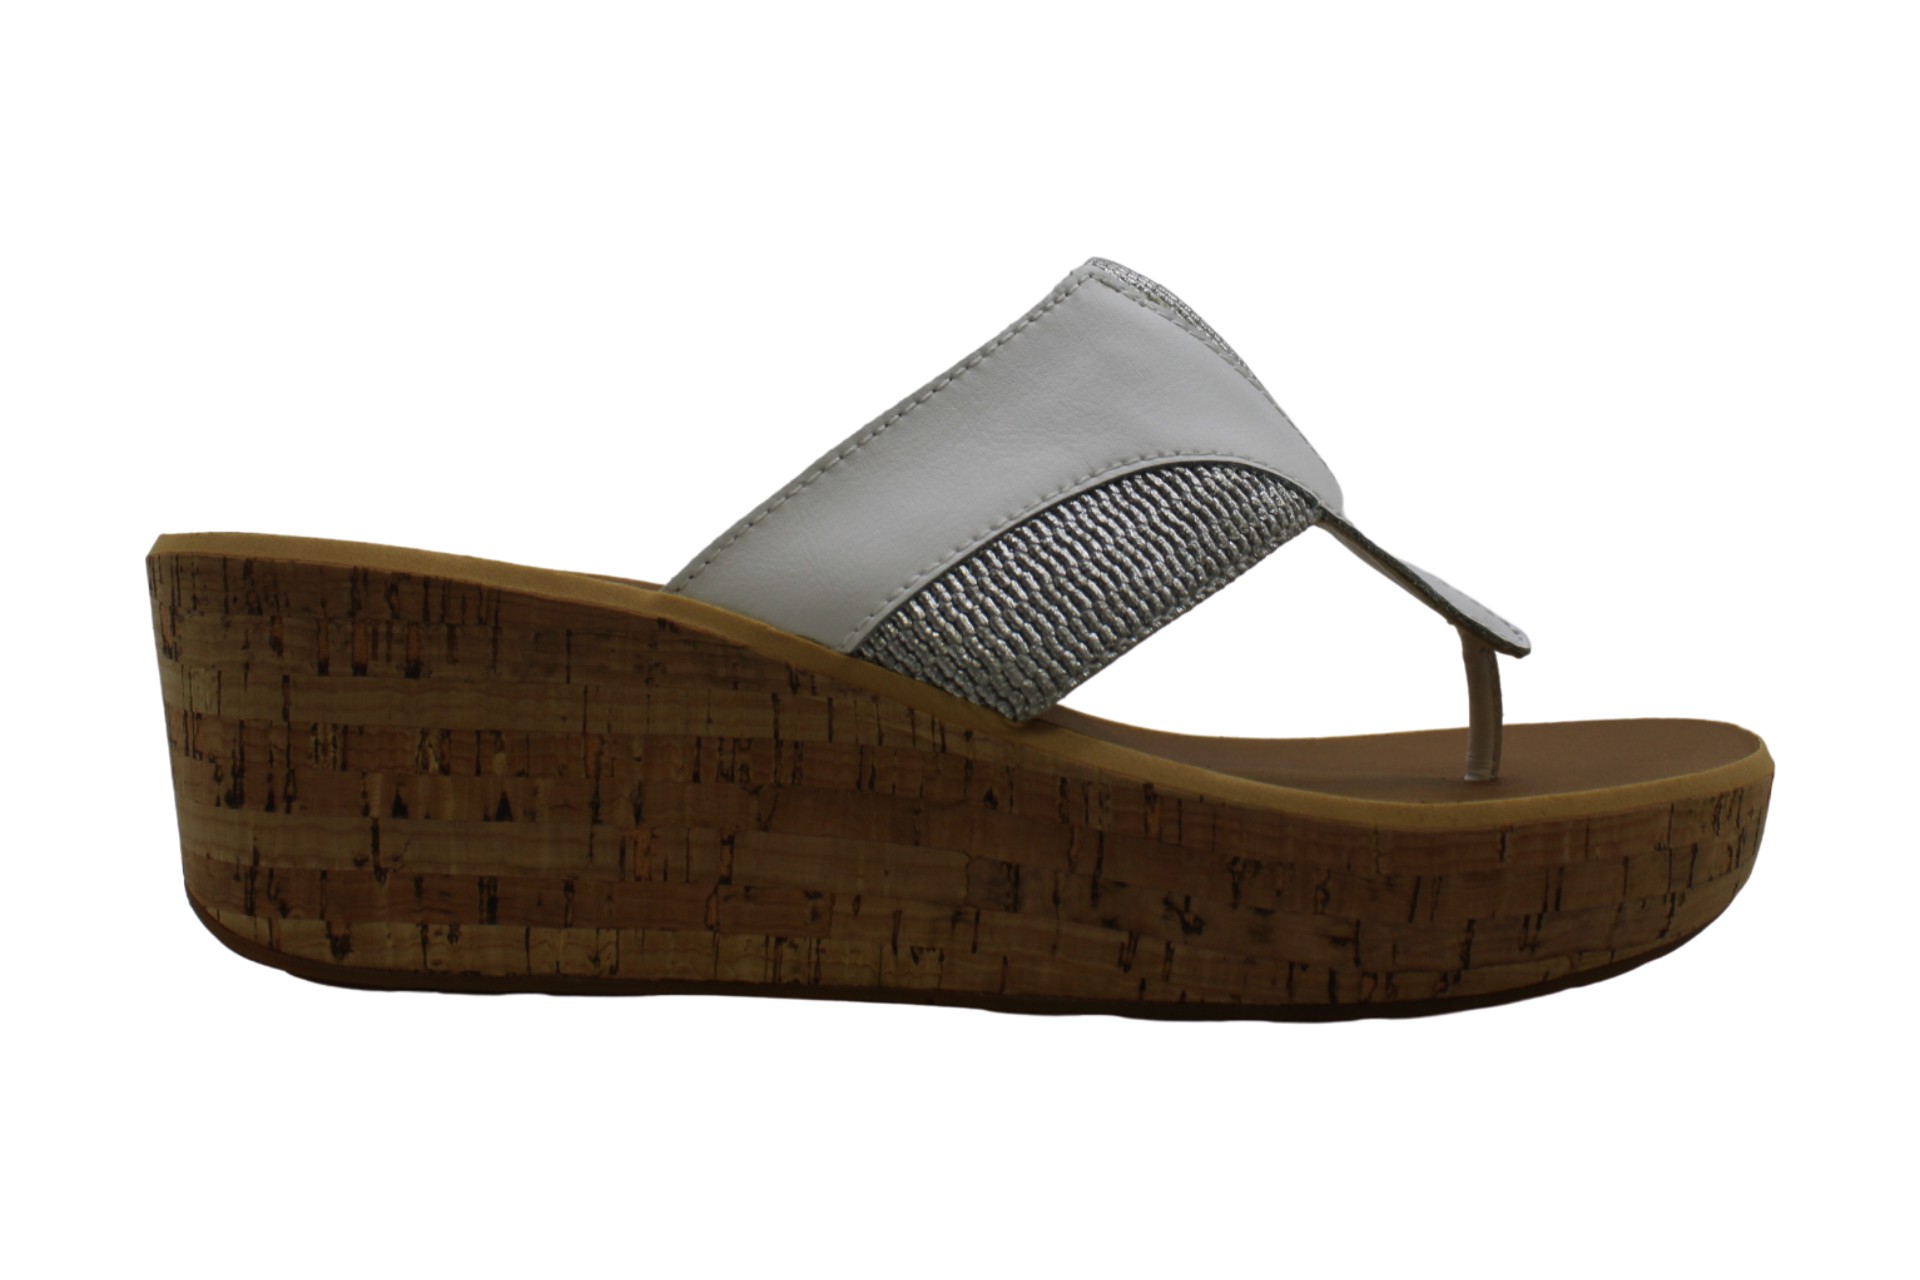 Rockport Womens Platform Sandals in White Color, Size 9.5 IEM | eBay